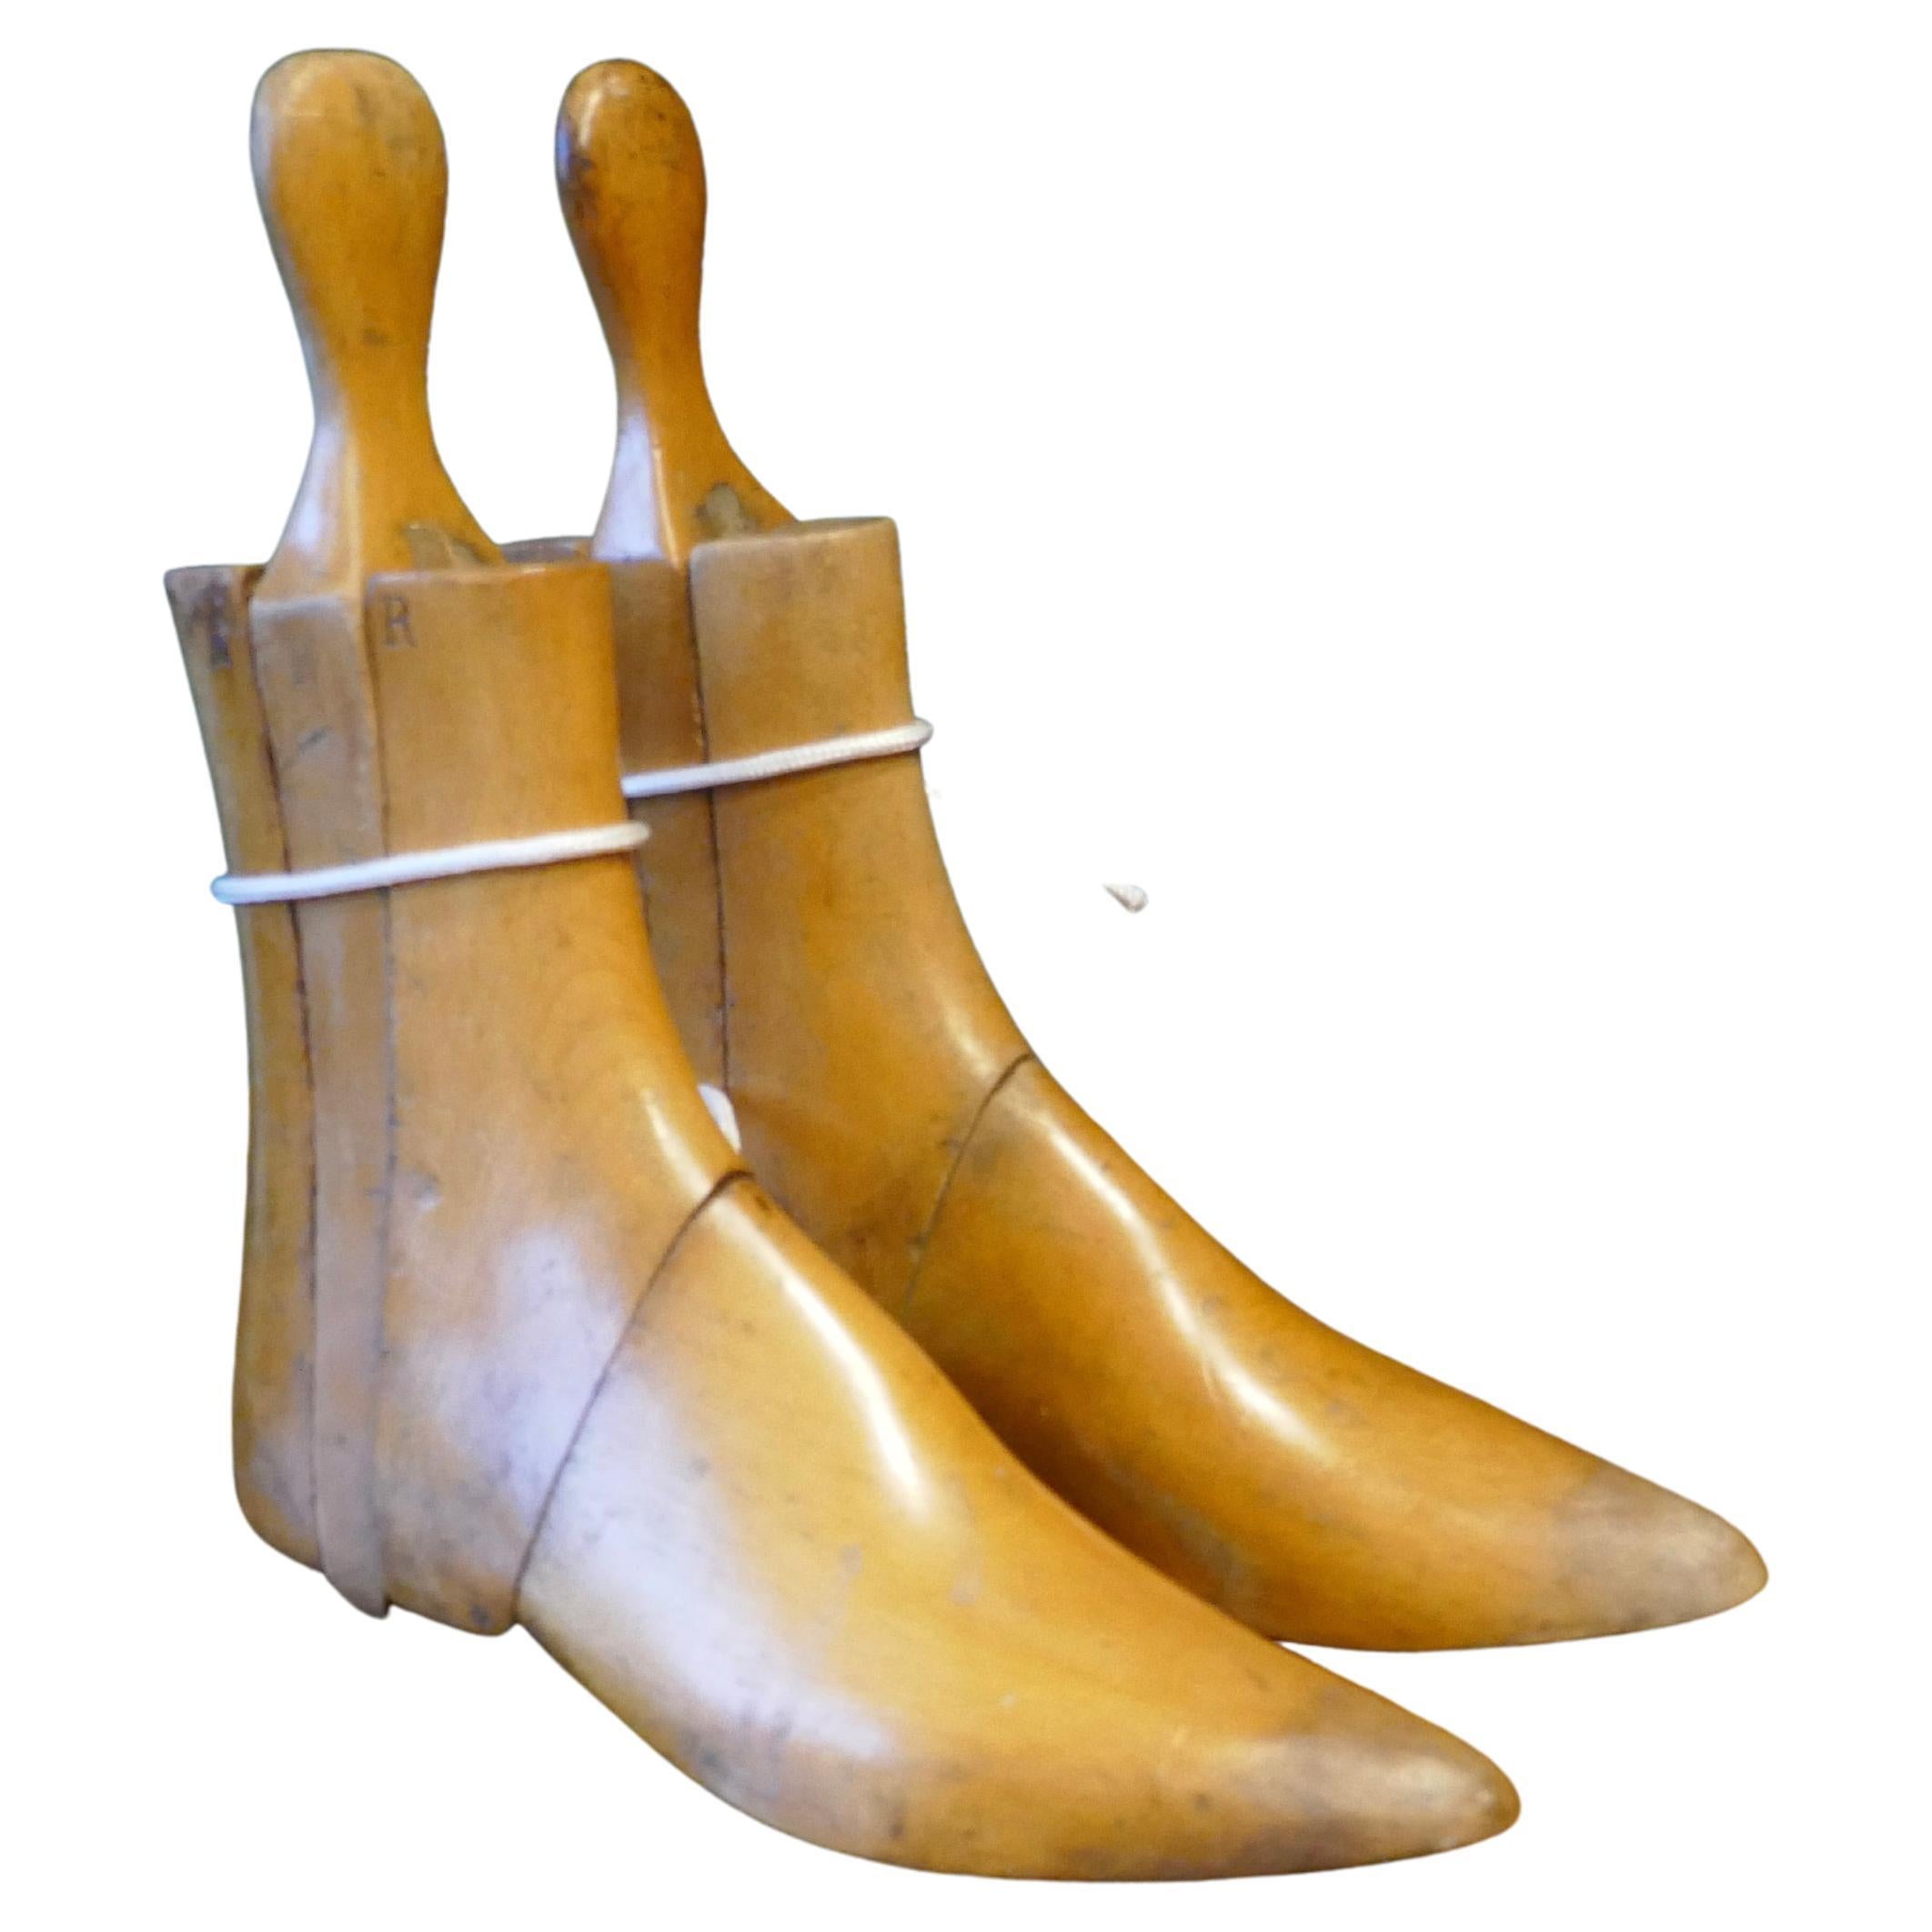 Treen-Stiefeletten oder Schuh-Streifen aus dem 19. Jahrhundert